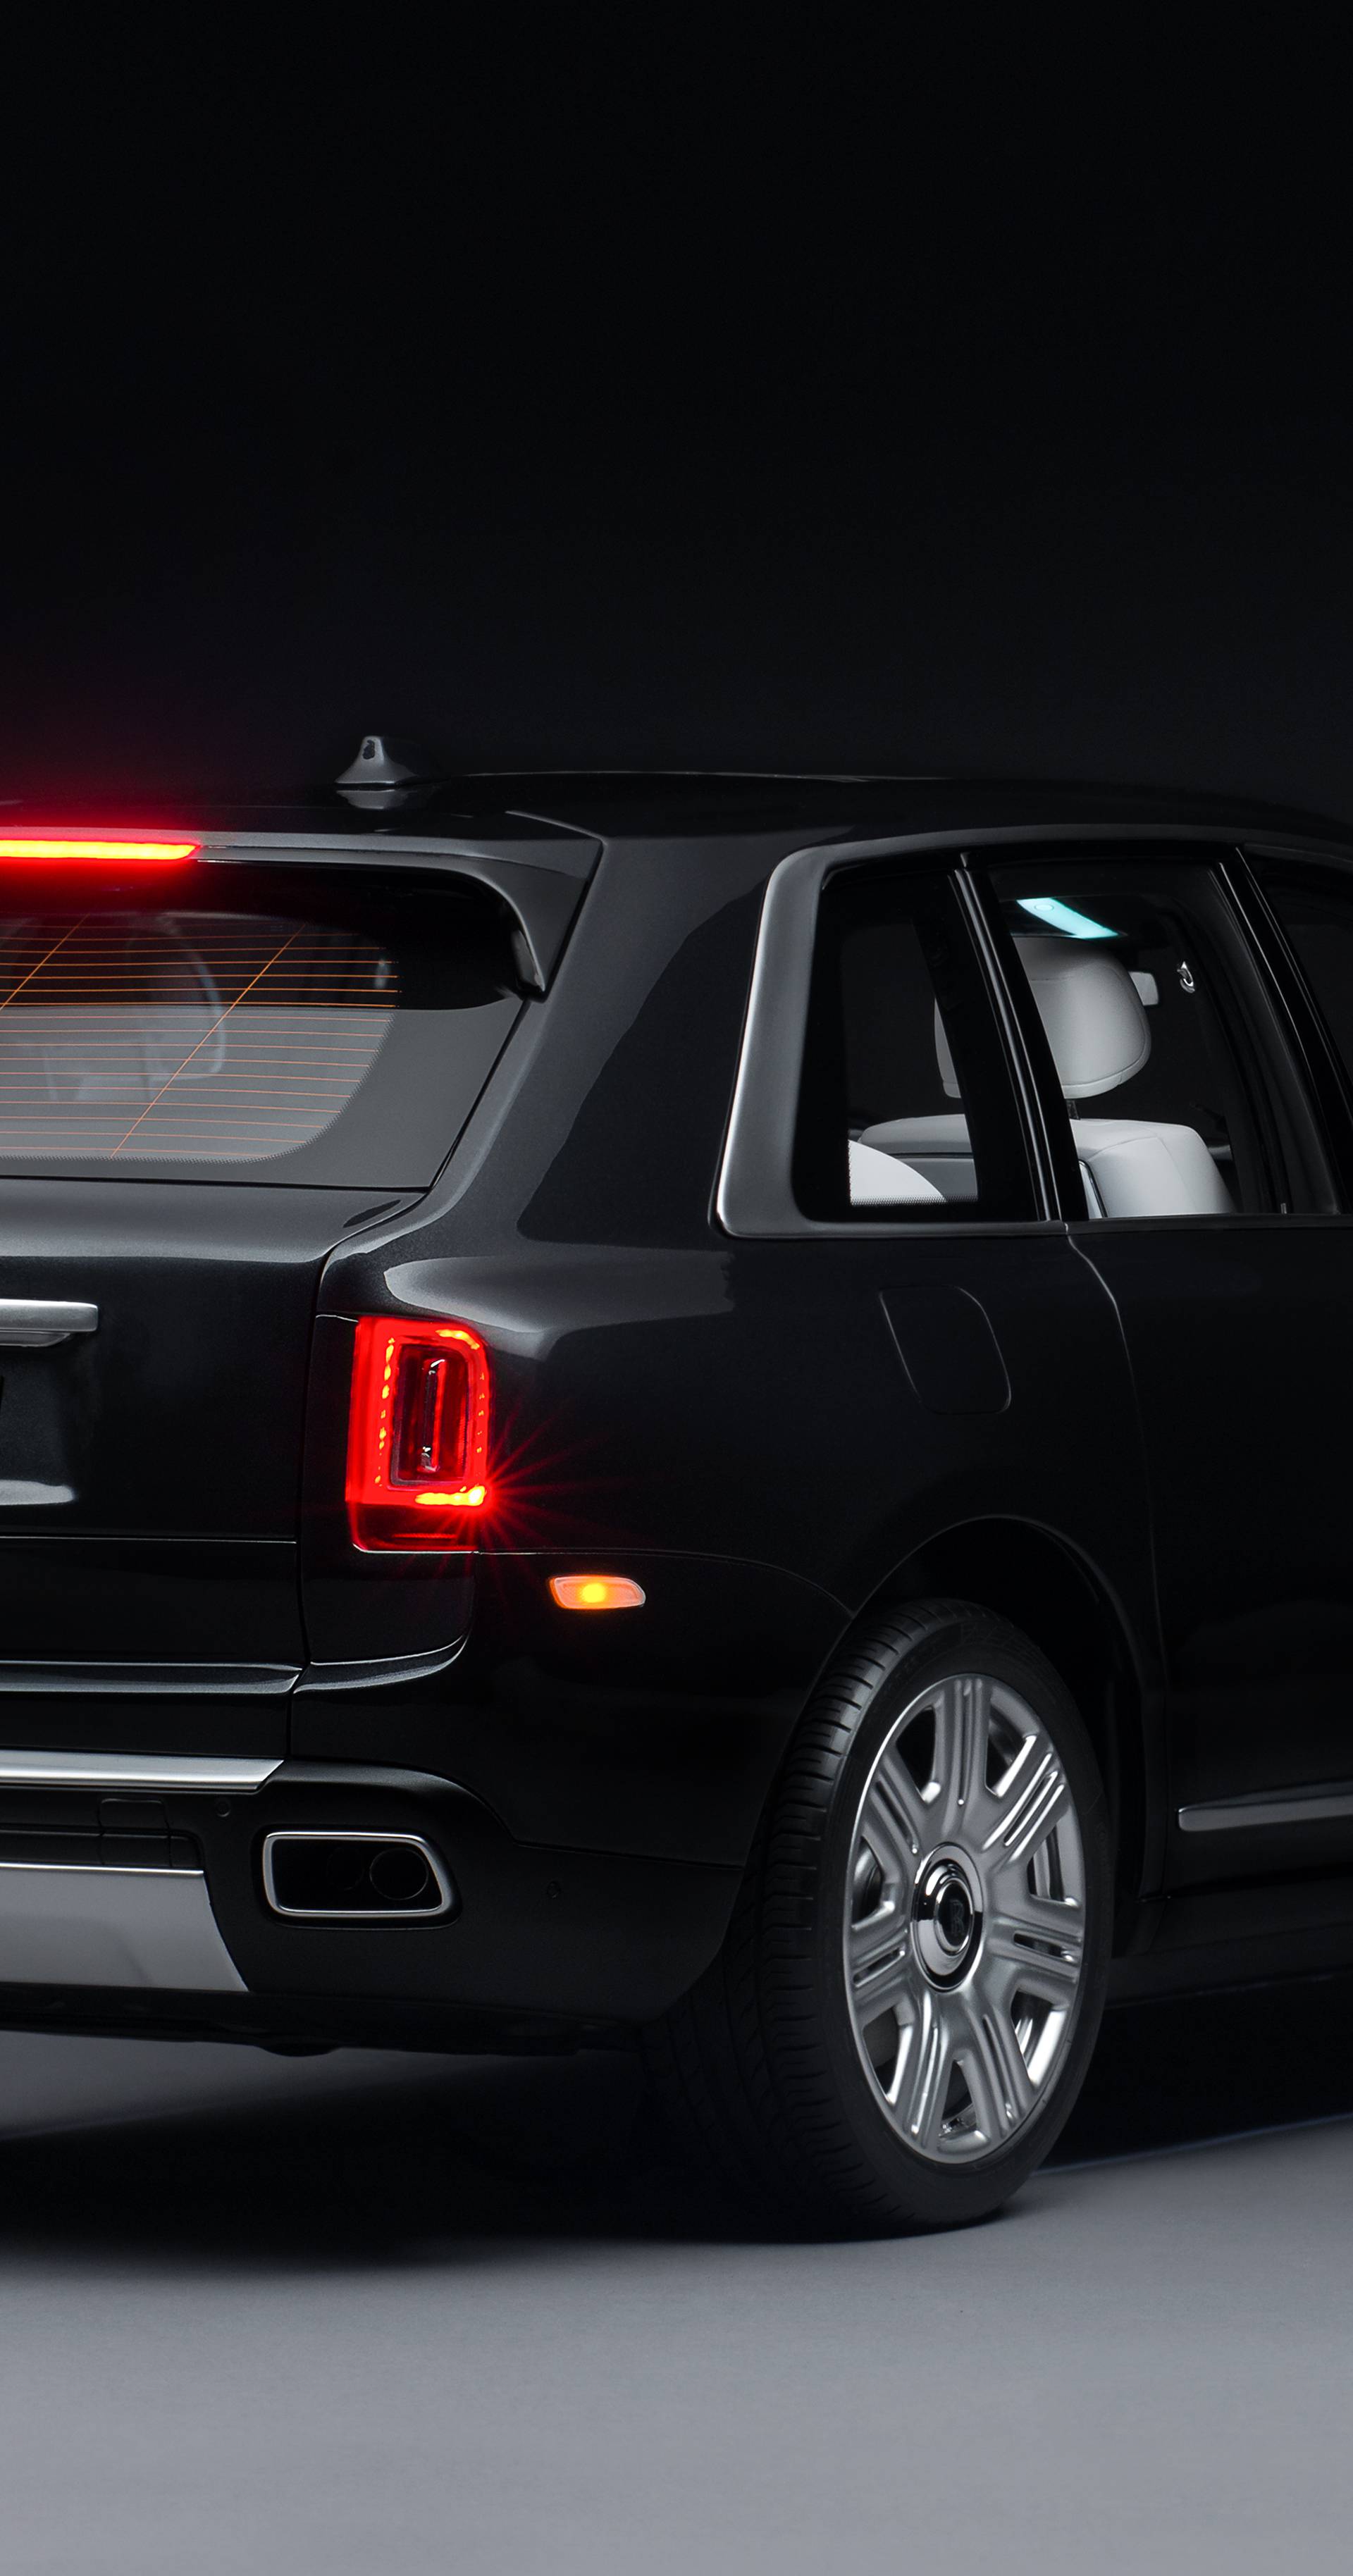 Nevjerojatno, ova Rolls Royce igračka košta čak 35.000 eura